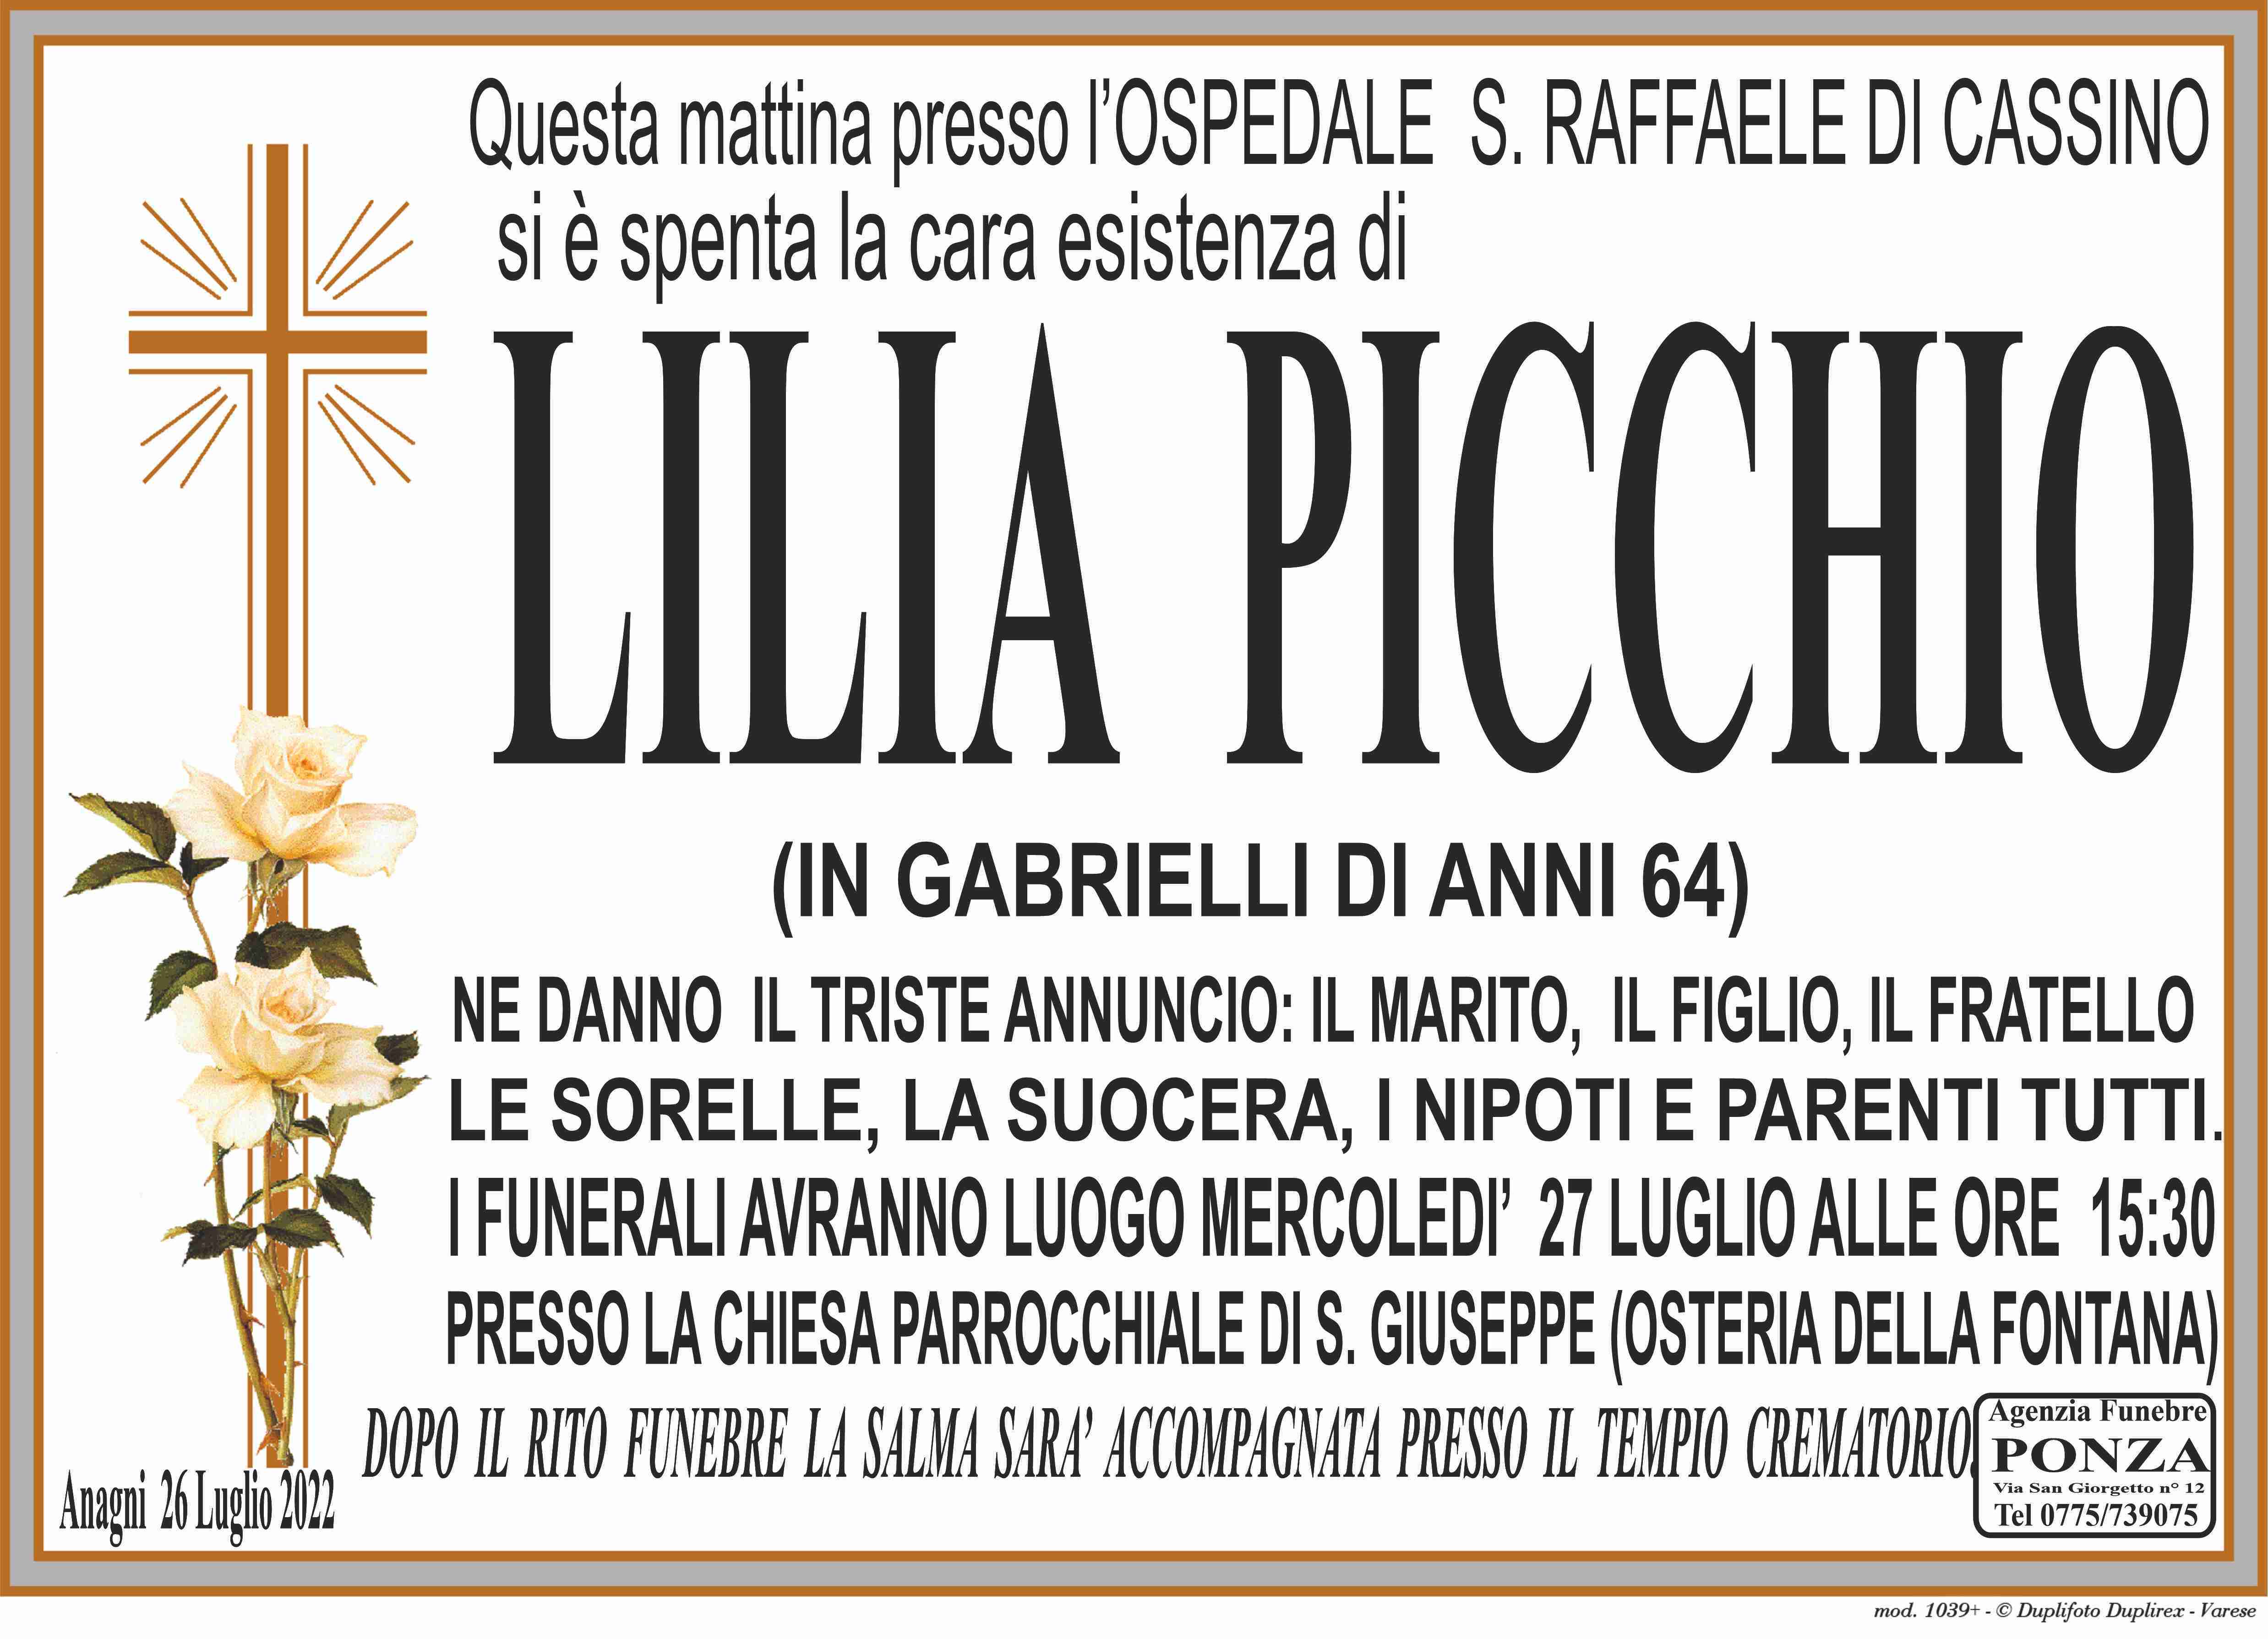 Lilia Picchio